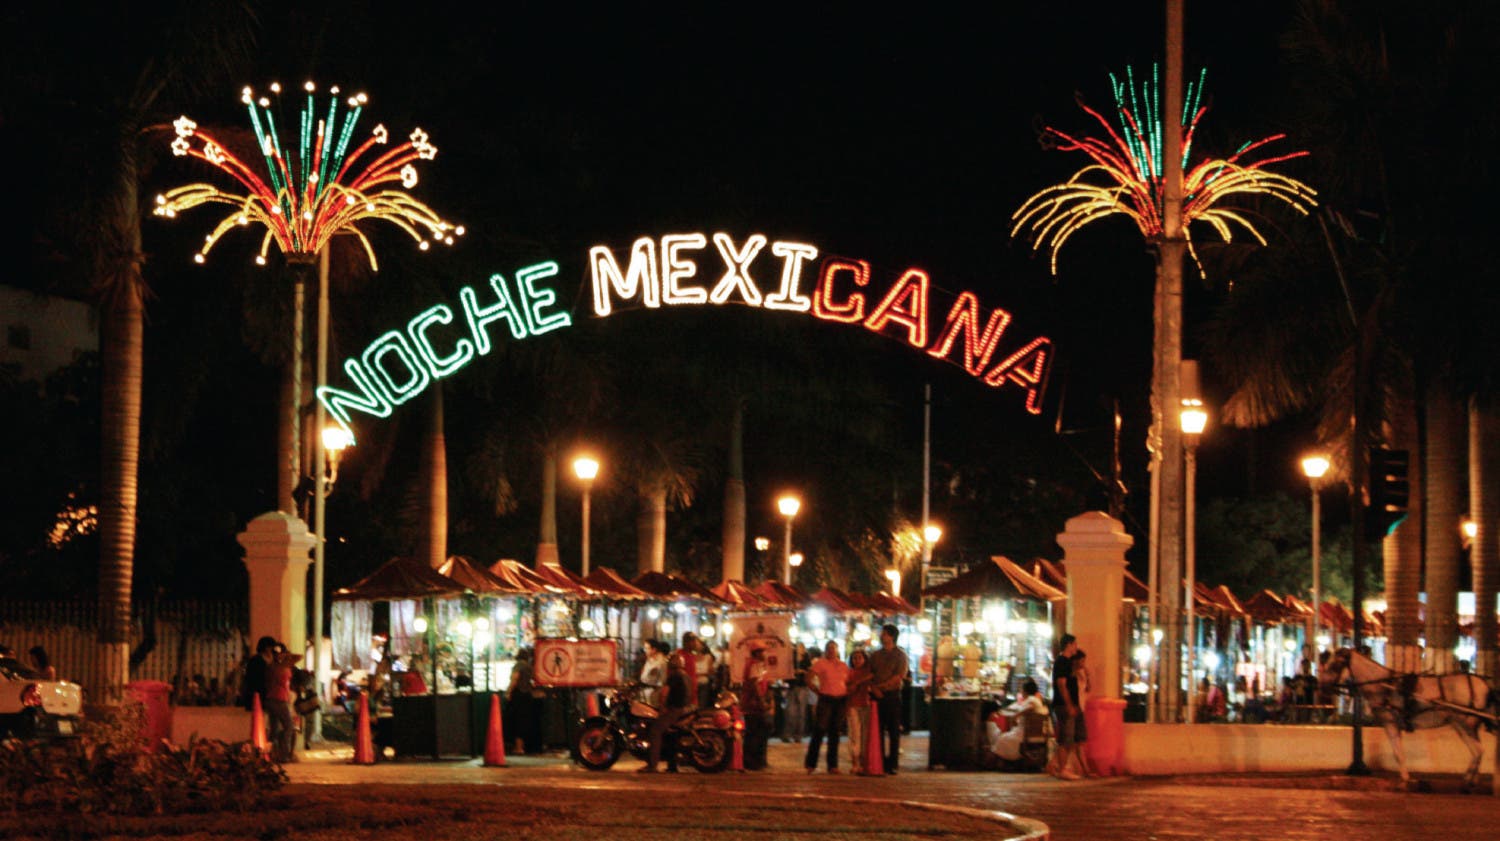 Organiza la noche mexicana perfecta! - Grupo Consulte